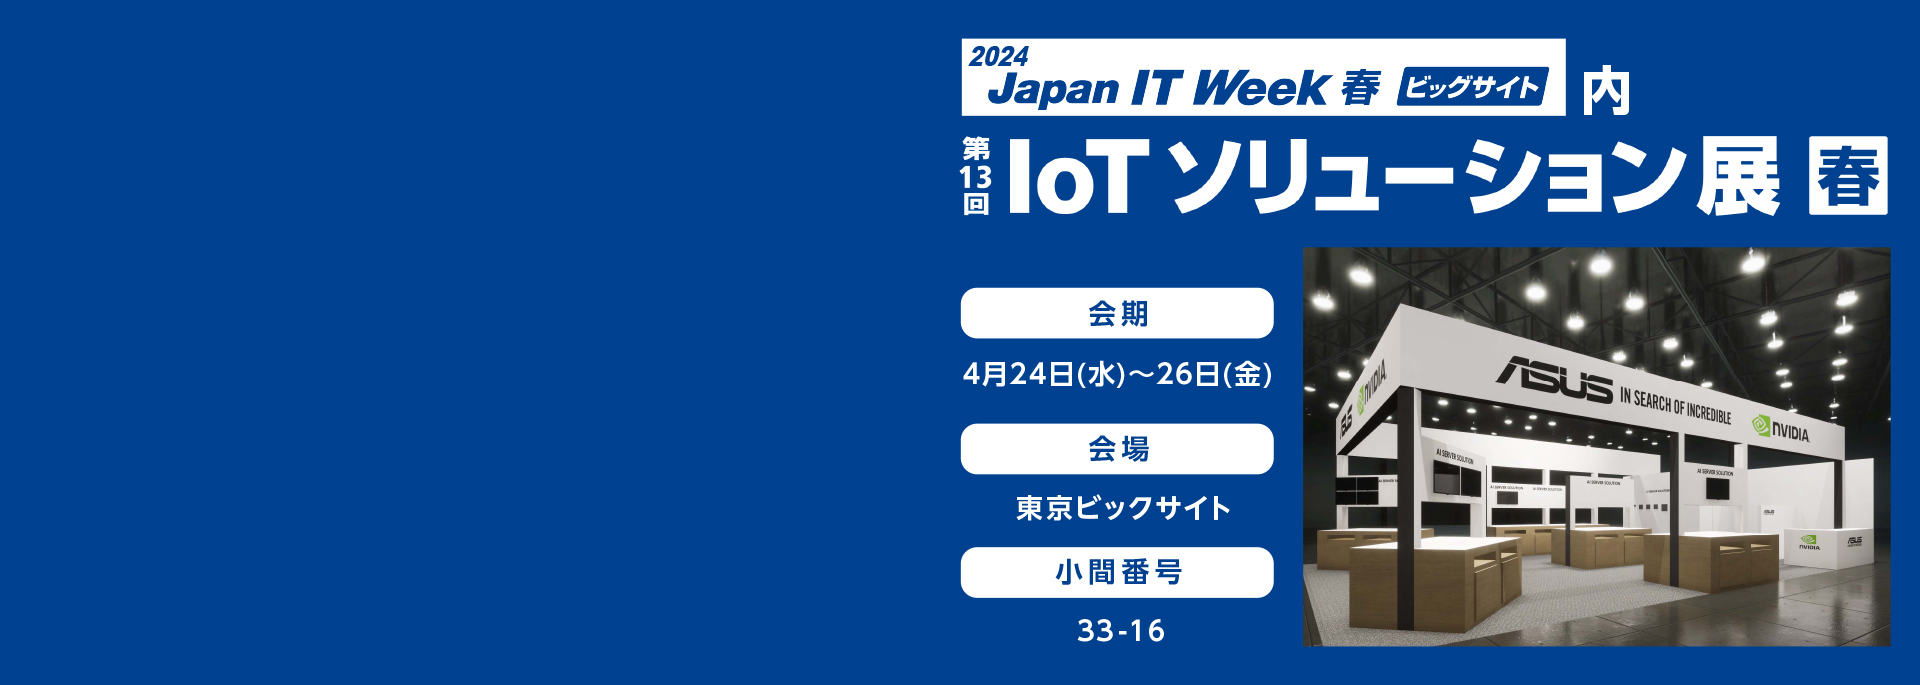 Japan IT Week 春展2024